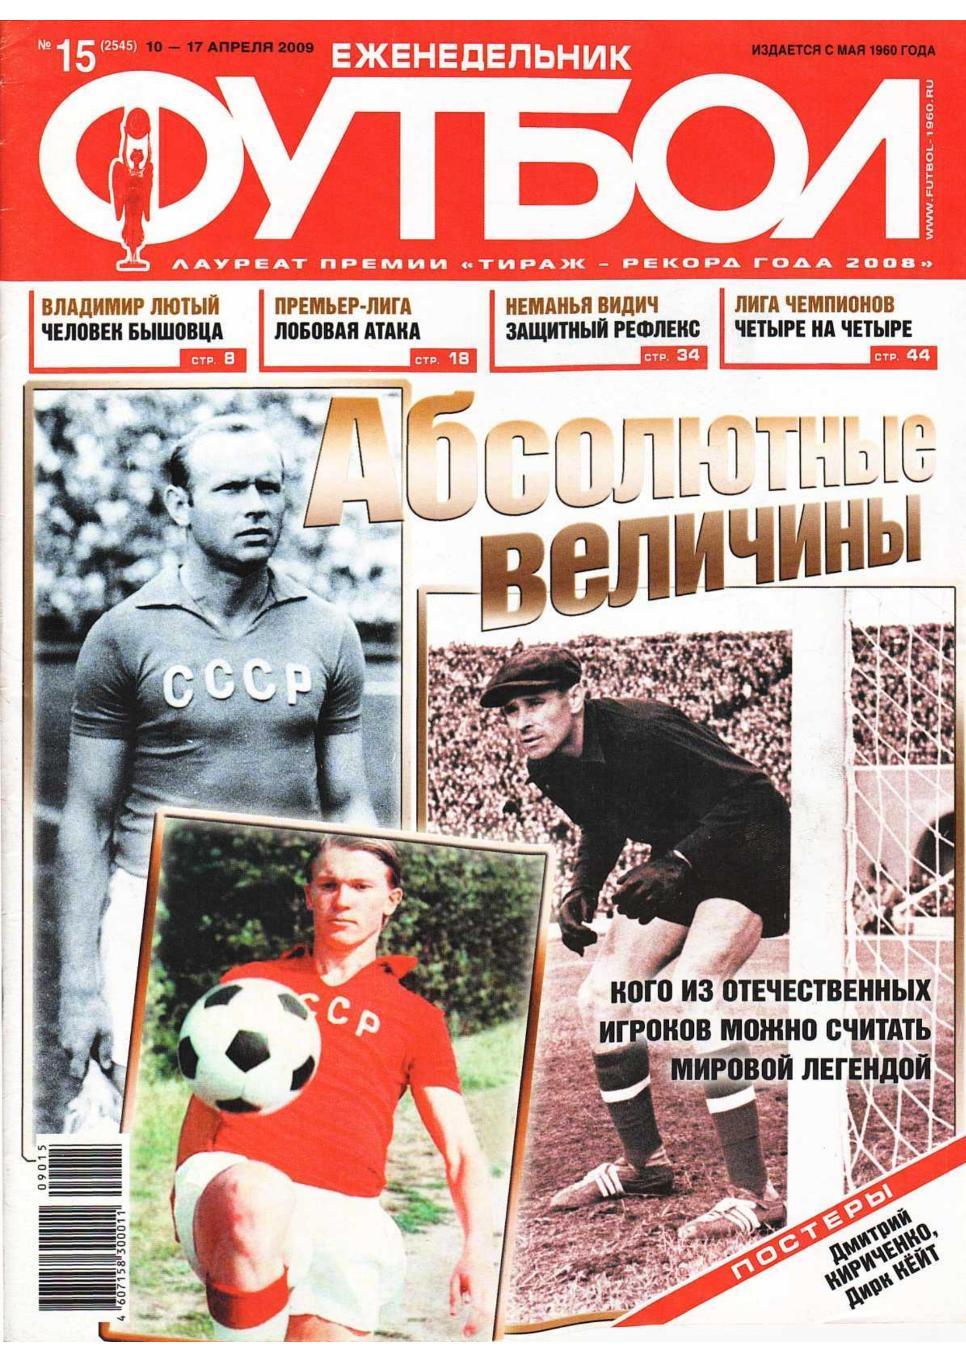 Еженедельник «Футбол». № 15. 10 – 17 апреля 2009.